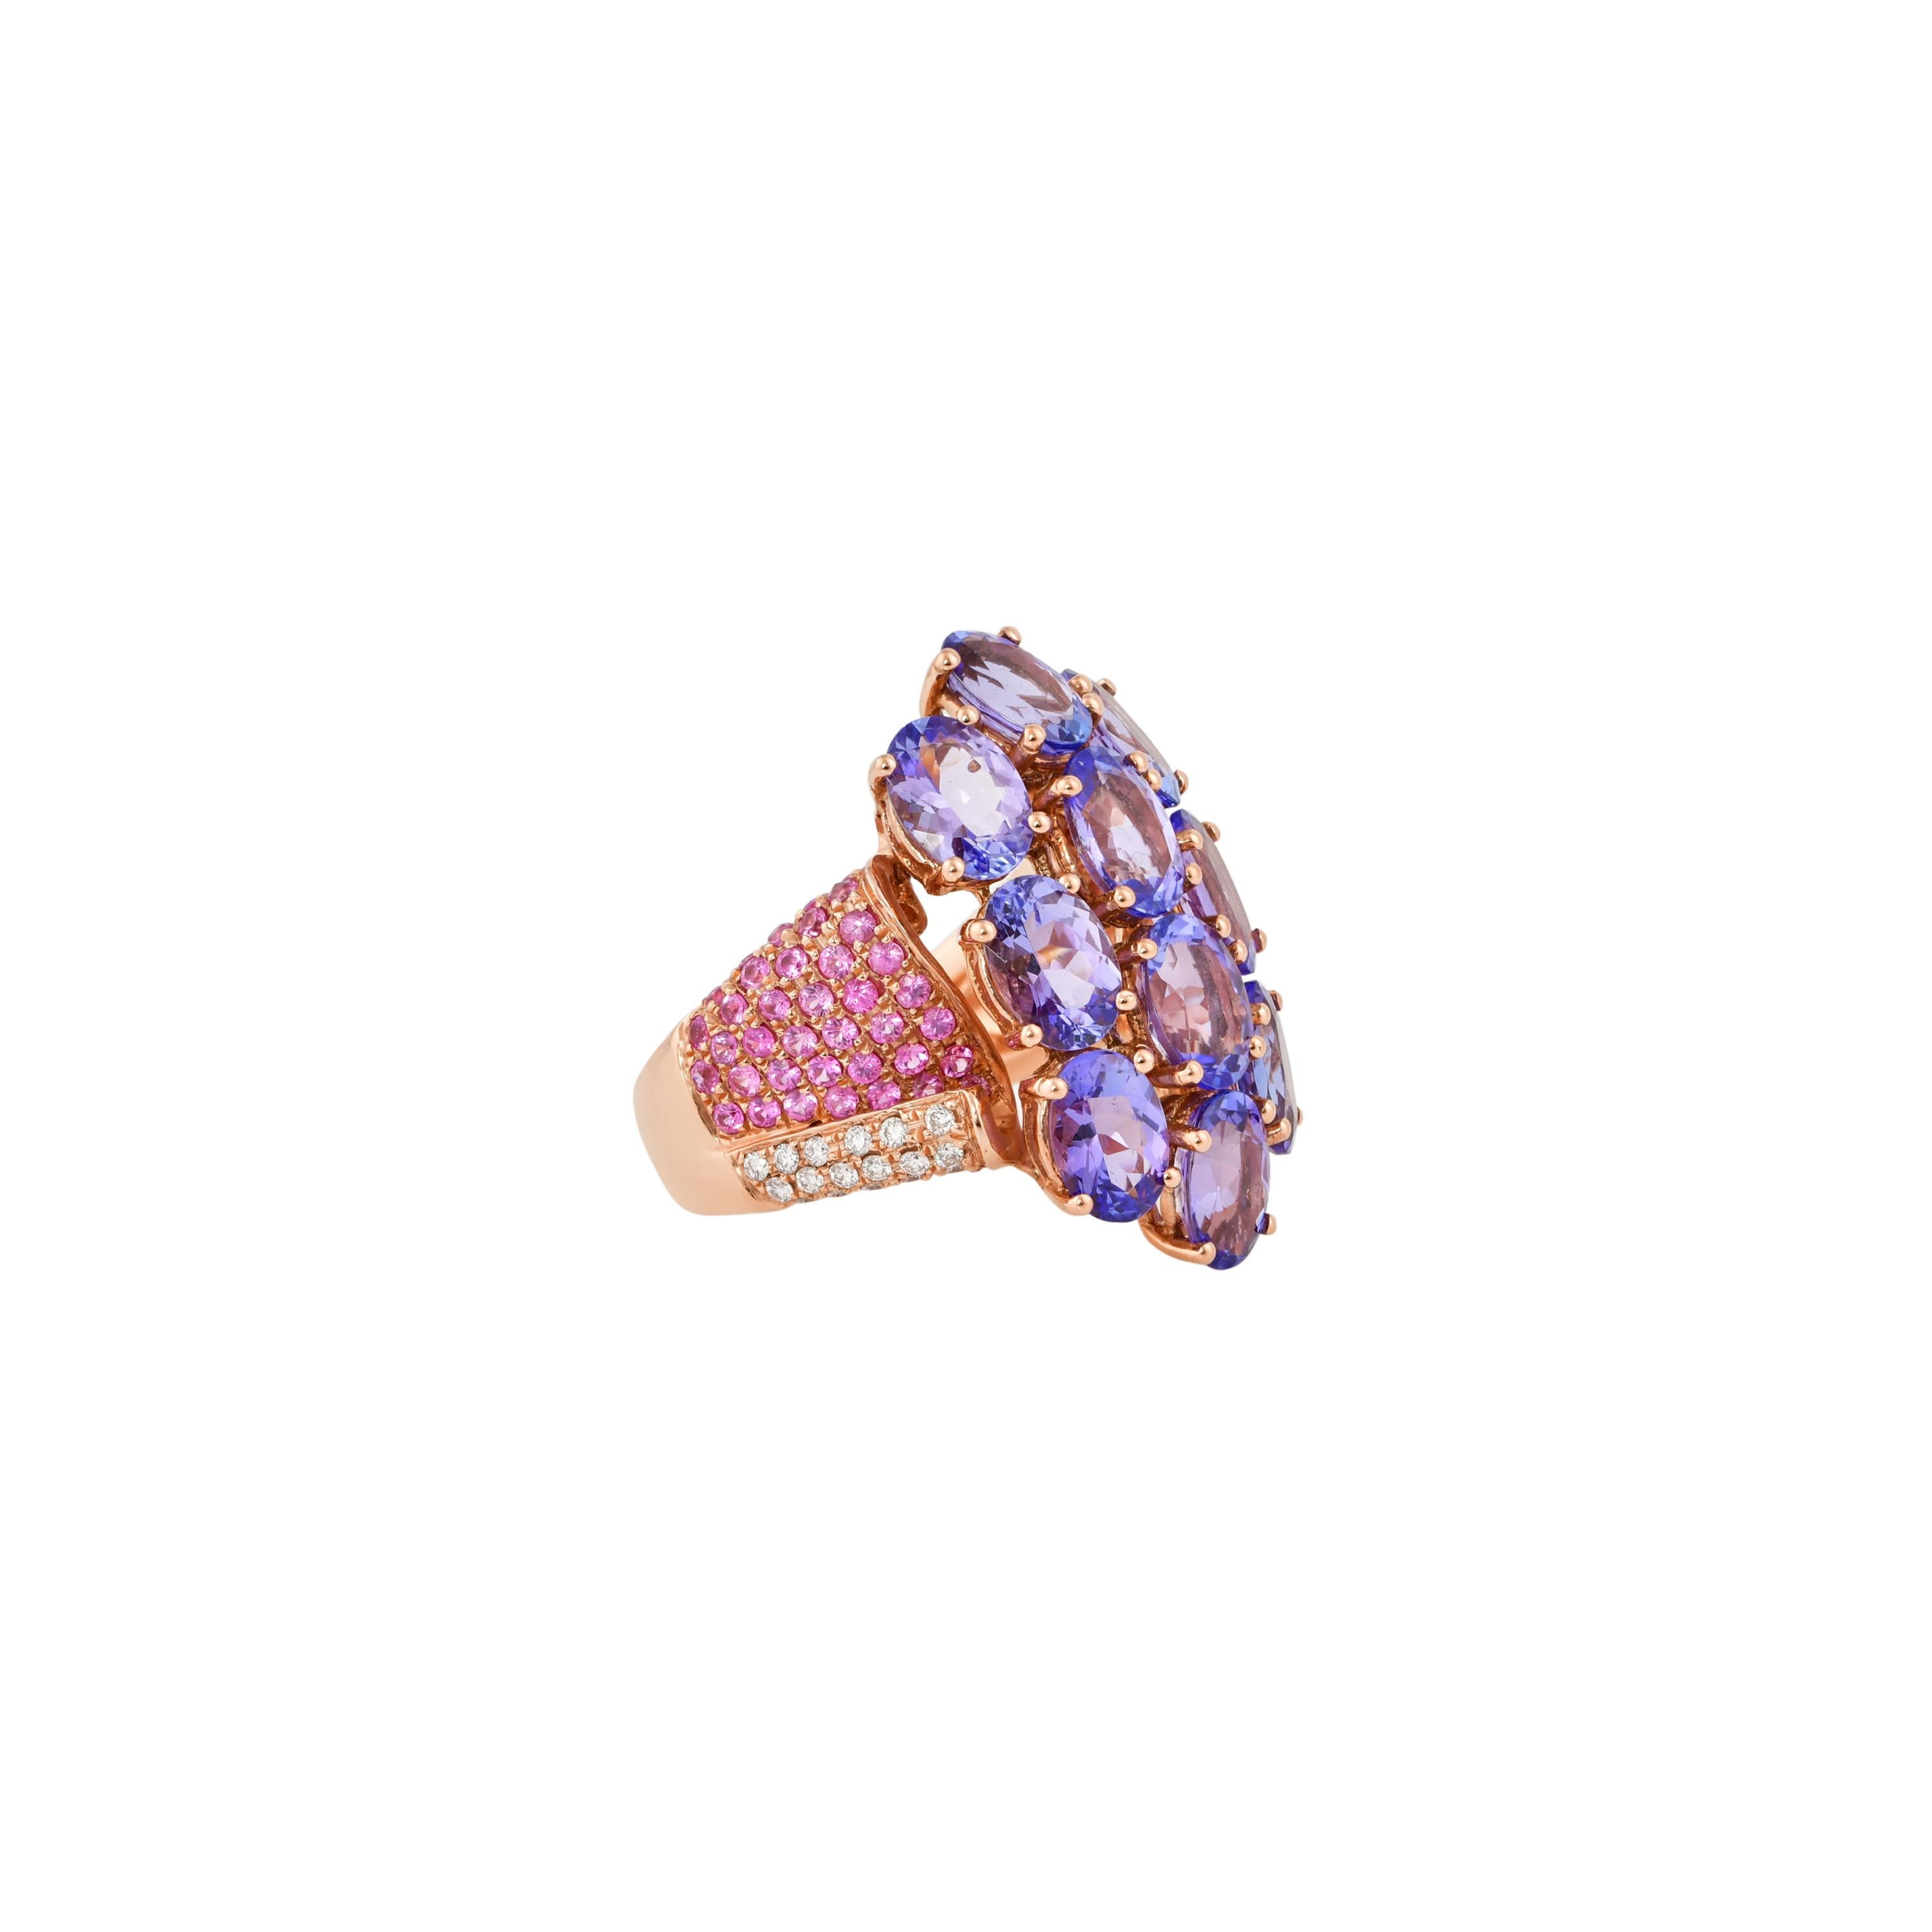 Glamorous Gemstones - Sunita Nahata begann ihre Karriere als Edelsteinhändlerin, und diese besondere Kollektion spiegelt ihre Liebe zu vielfarbigen Halbedelsteinen wider. Dieser Ring besteht aus einem Cluster der lebhaftesten Tansanite, die aus